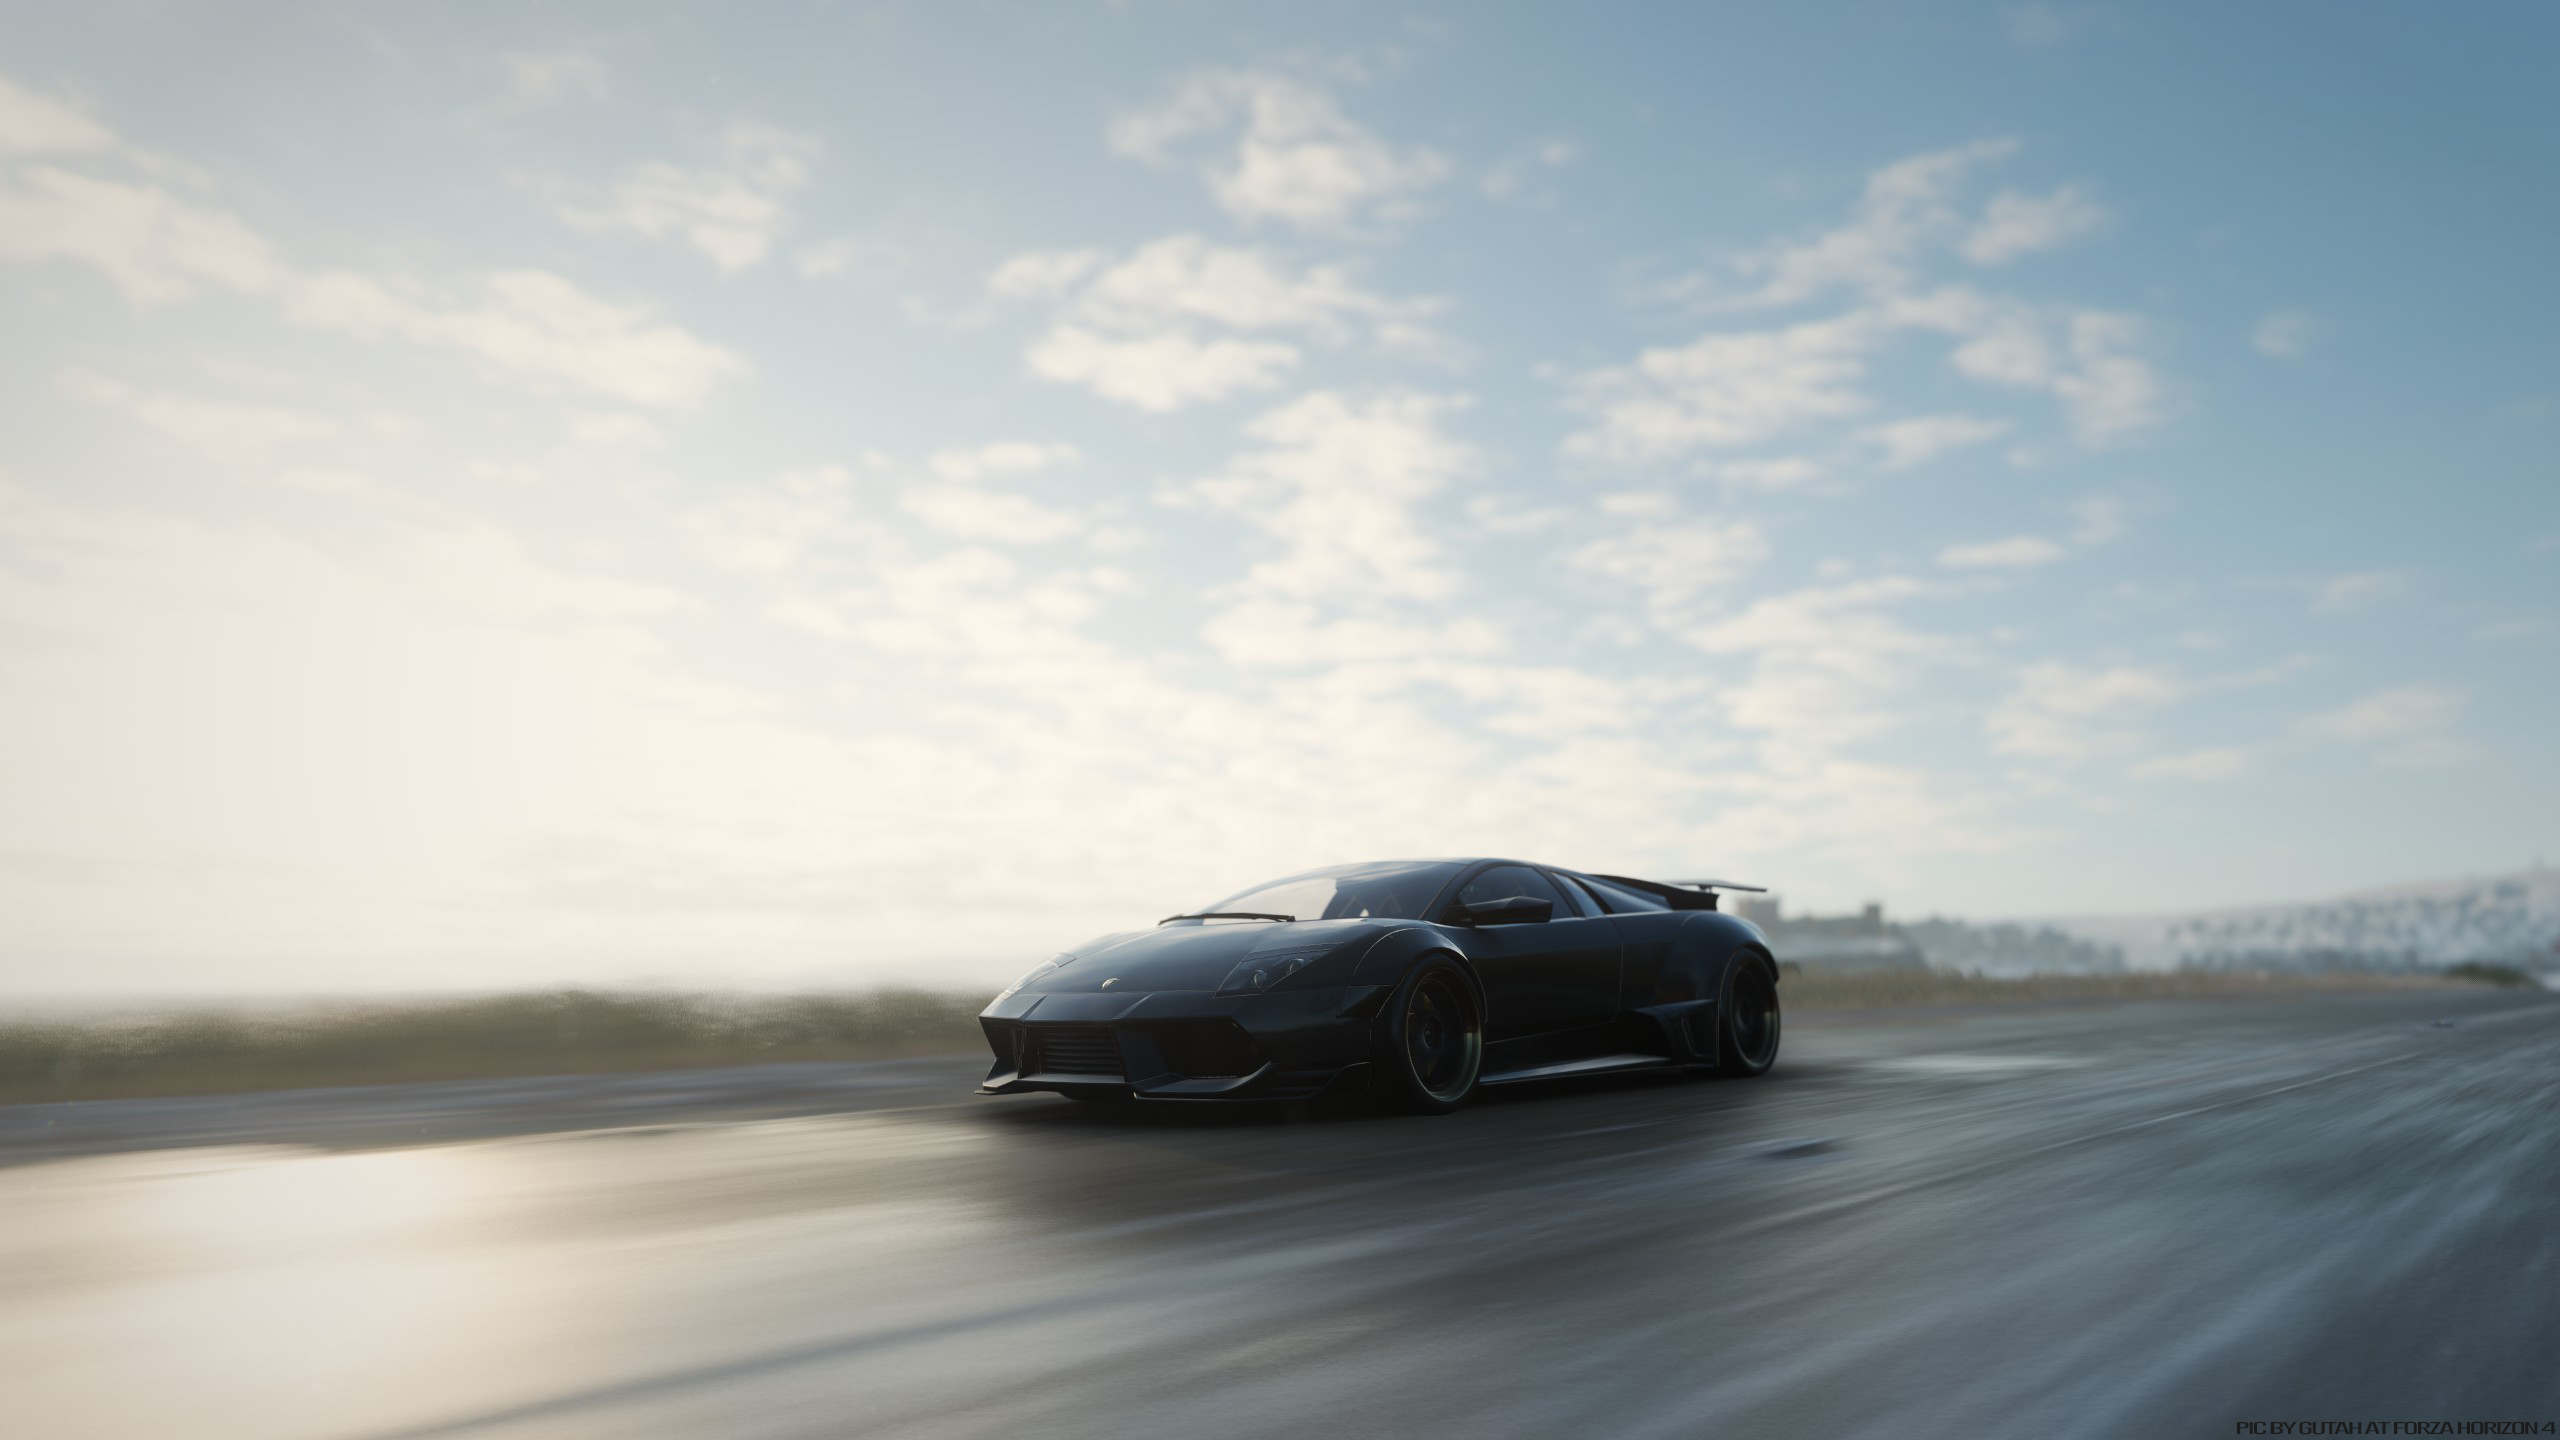 General 2560x1440 Forza Horizon 4 Forza car video game art screen shot racing video games